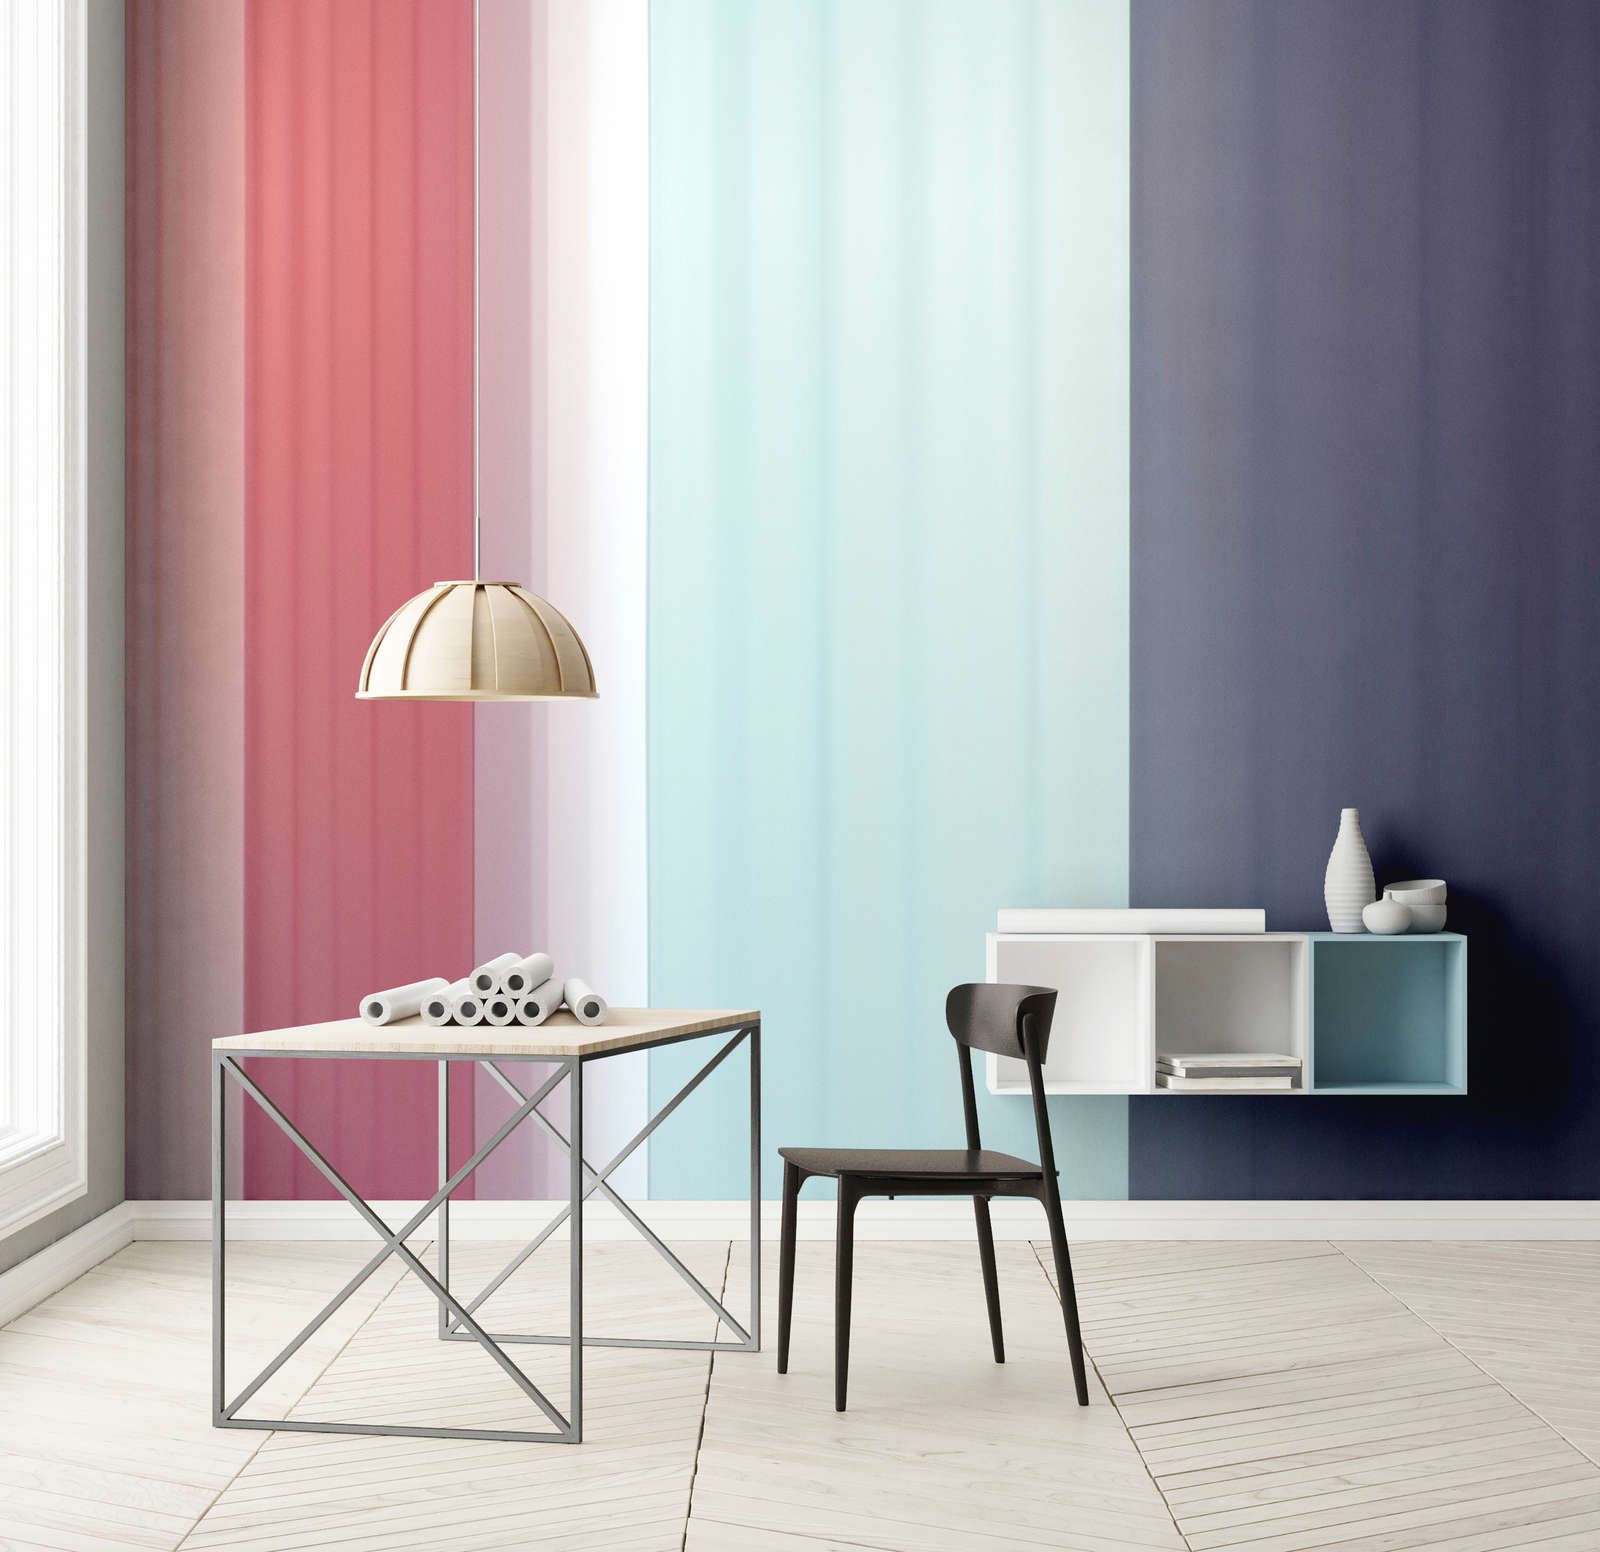             Fototapete »co-colores 2« - Farbverlauf mit Streifen – Pink, Hellblau Dunkelblau | Glattes, leicht glänzendes Premiumvlies
        